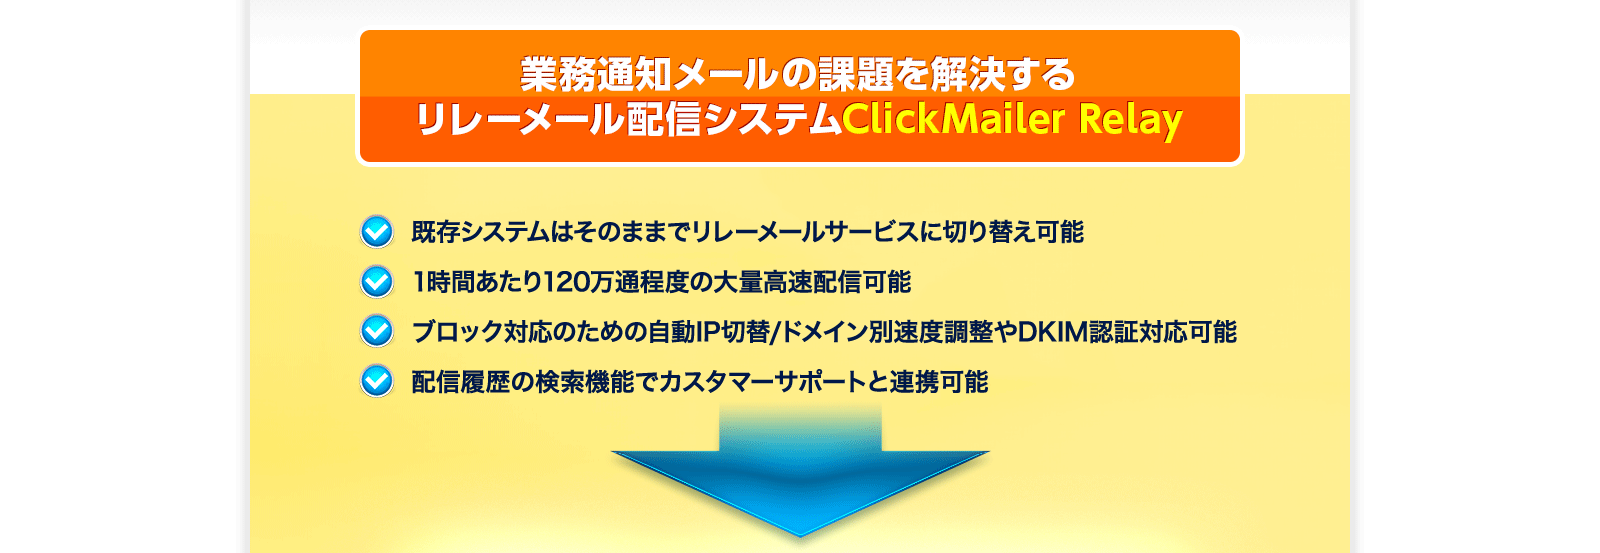 業務通知メールの課題を解決するリレーメール配信システムClickMailer Relay